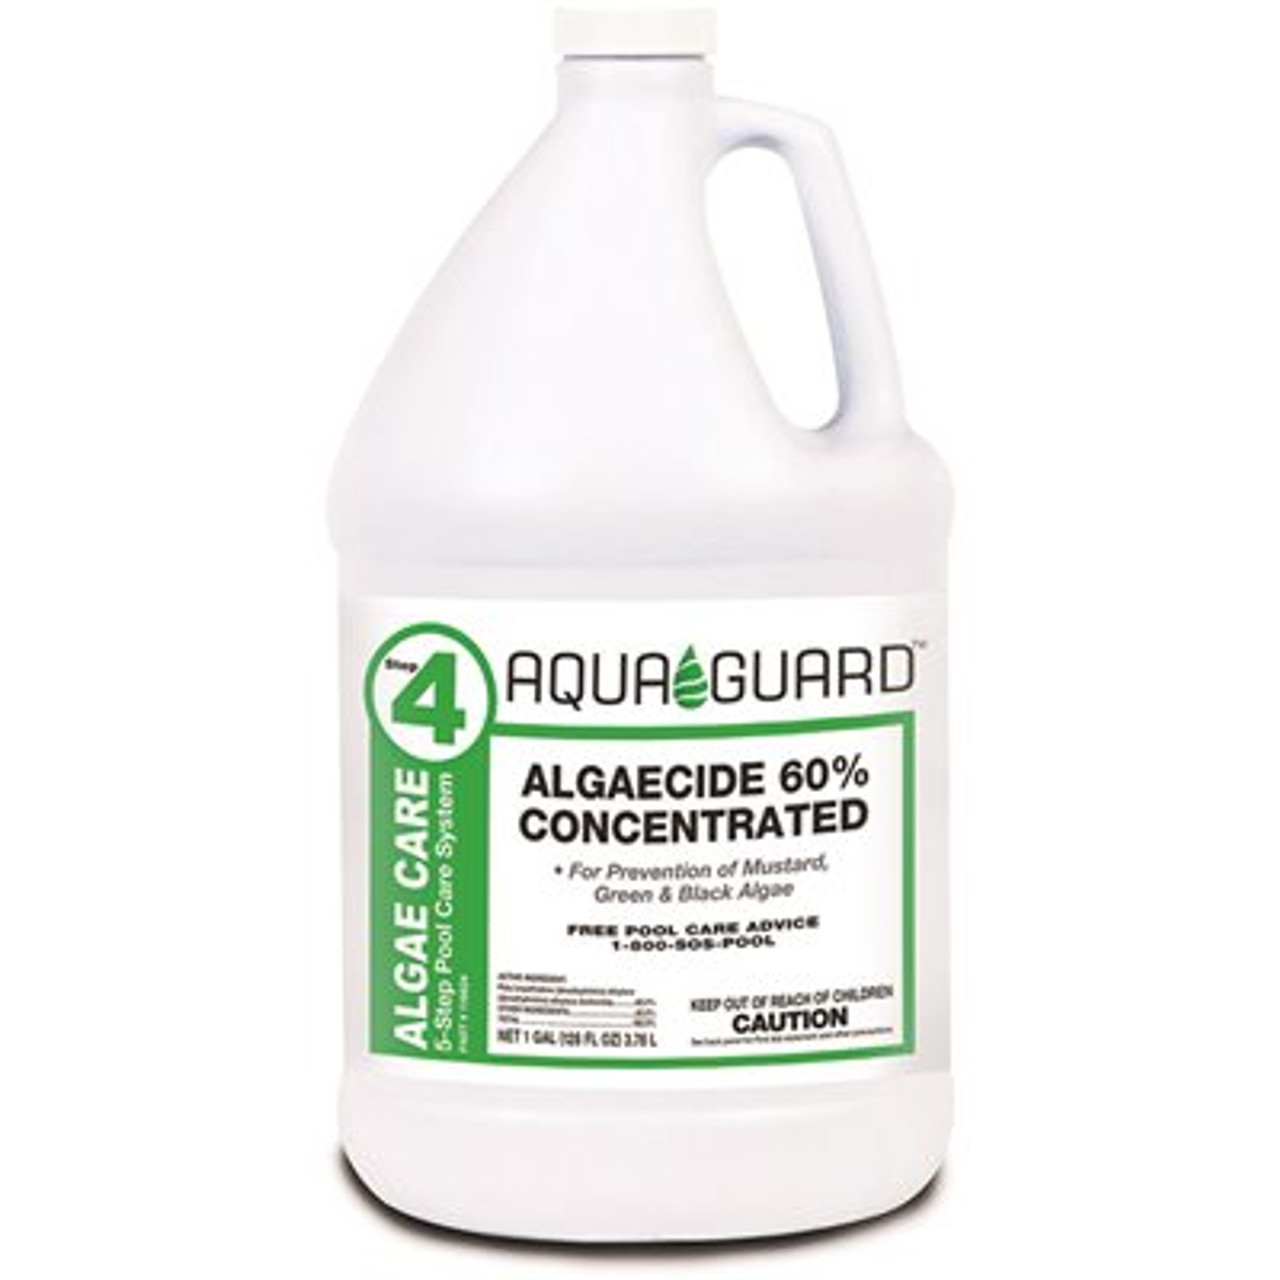 AQUAGUARD Algaecide 60% Concentrated